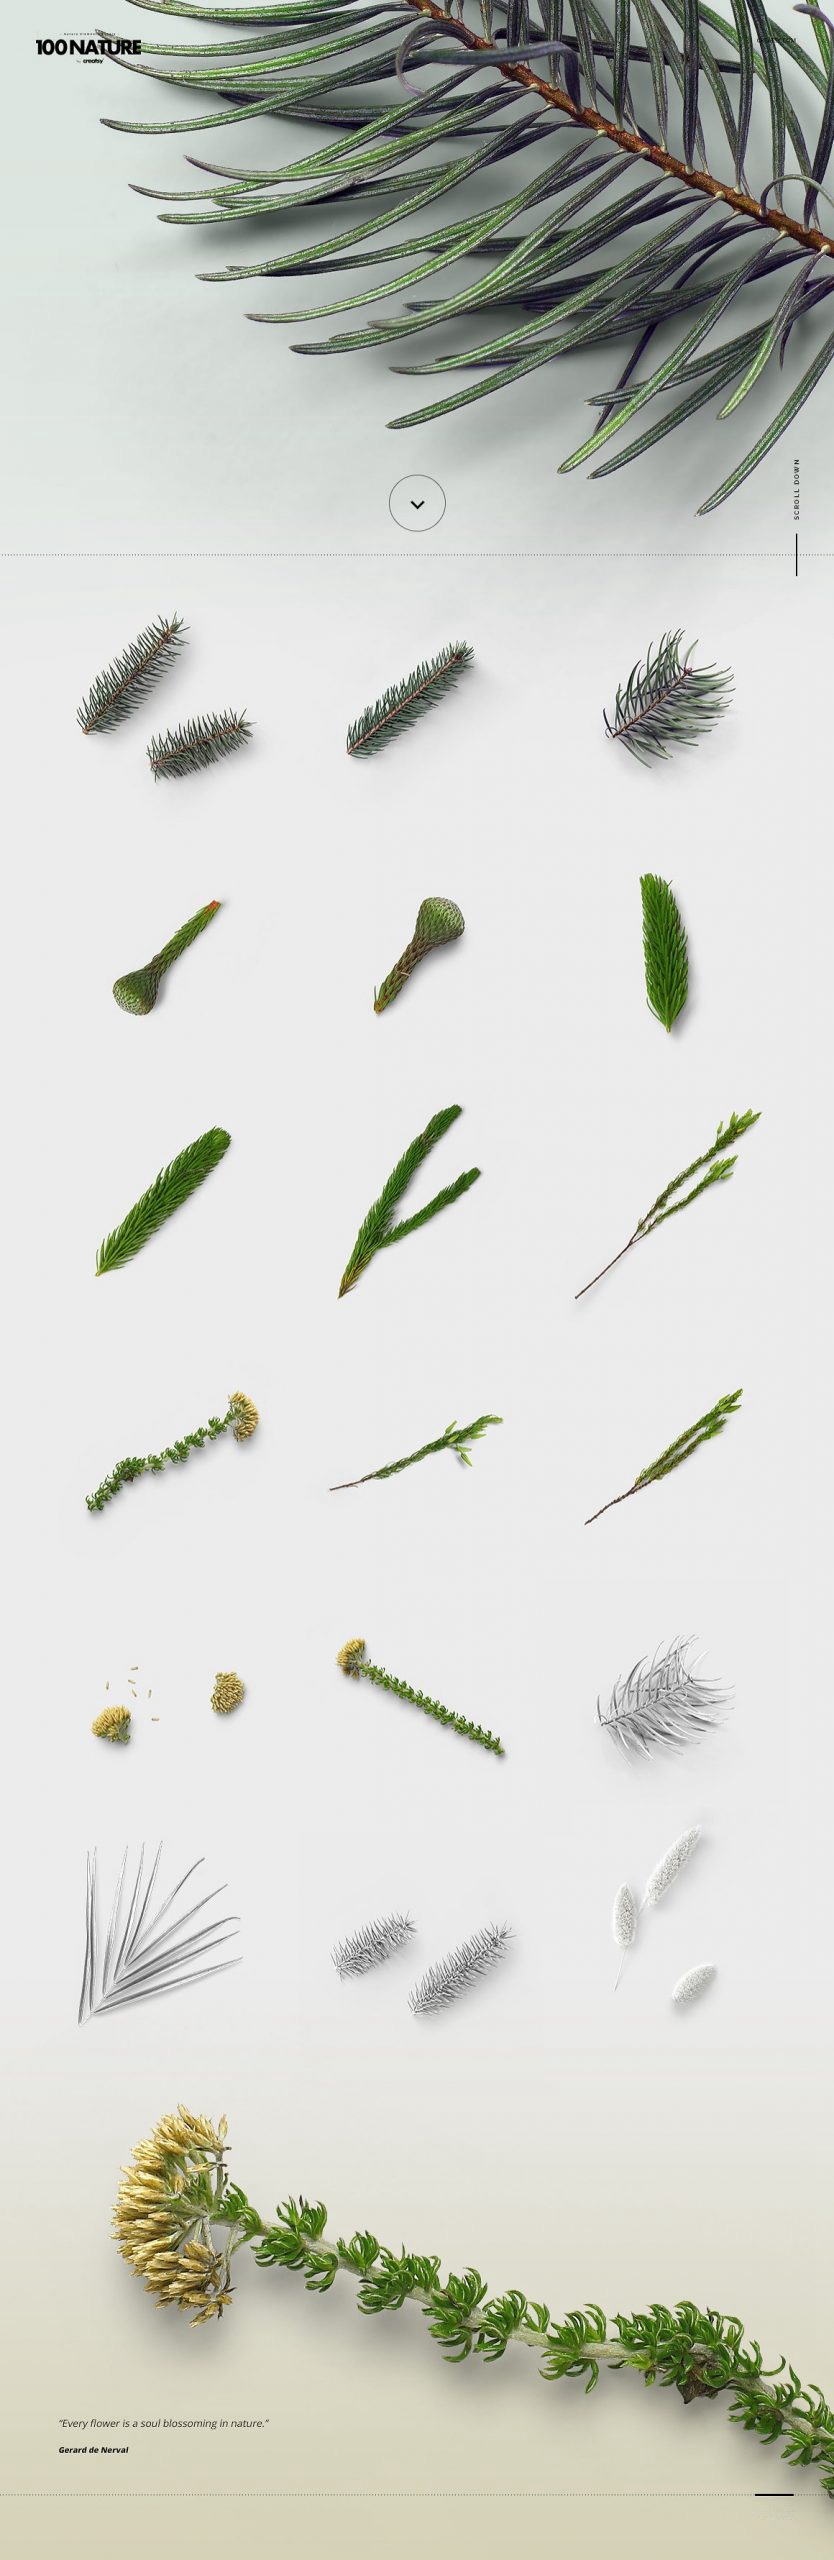 100款绿色花卉自然植物元素tif格式高质量图片素材套装 图片素材 第6张